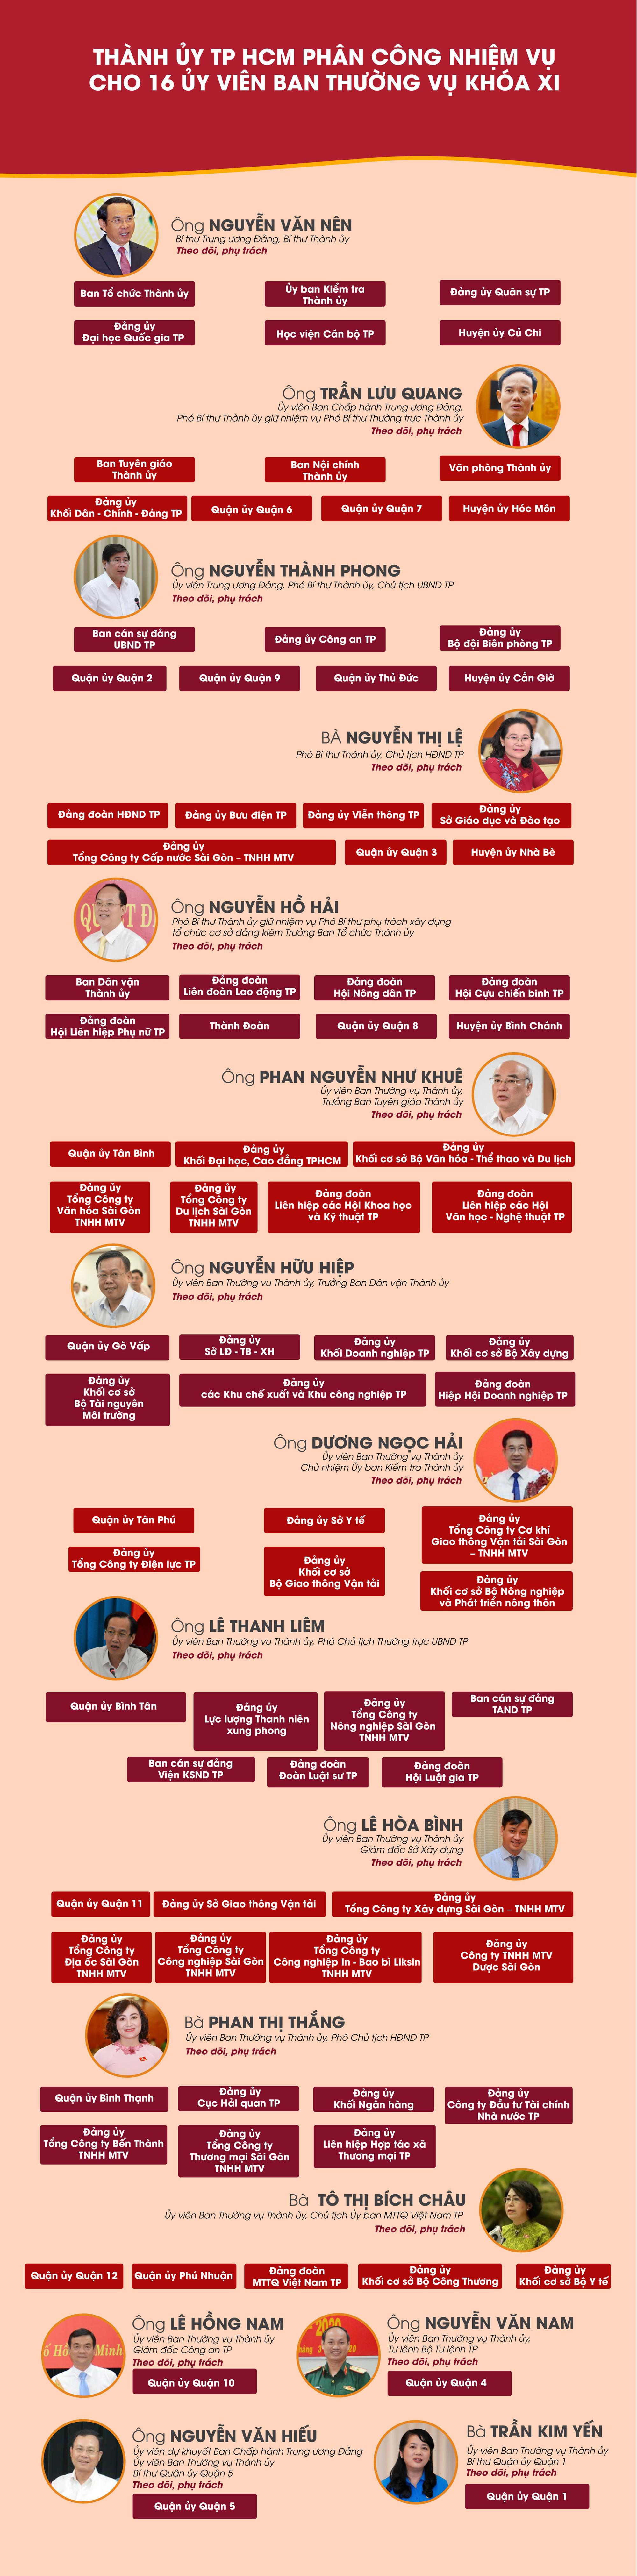 [Infographic] Nhiệm vụ cụ thể của 16 Ủy viên Ban Thường vụ Thành ủy TP HCM khóa XI - Ảnh 1.